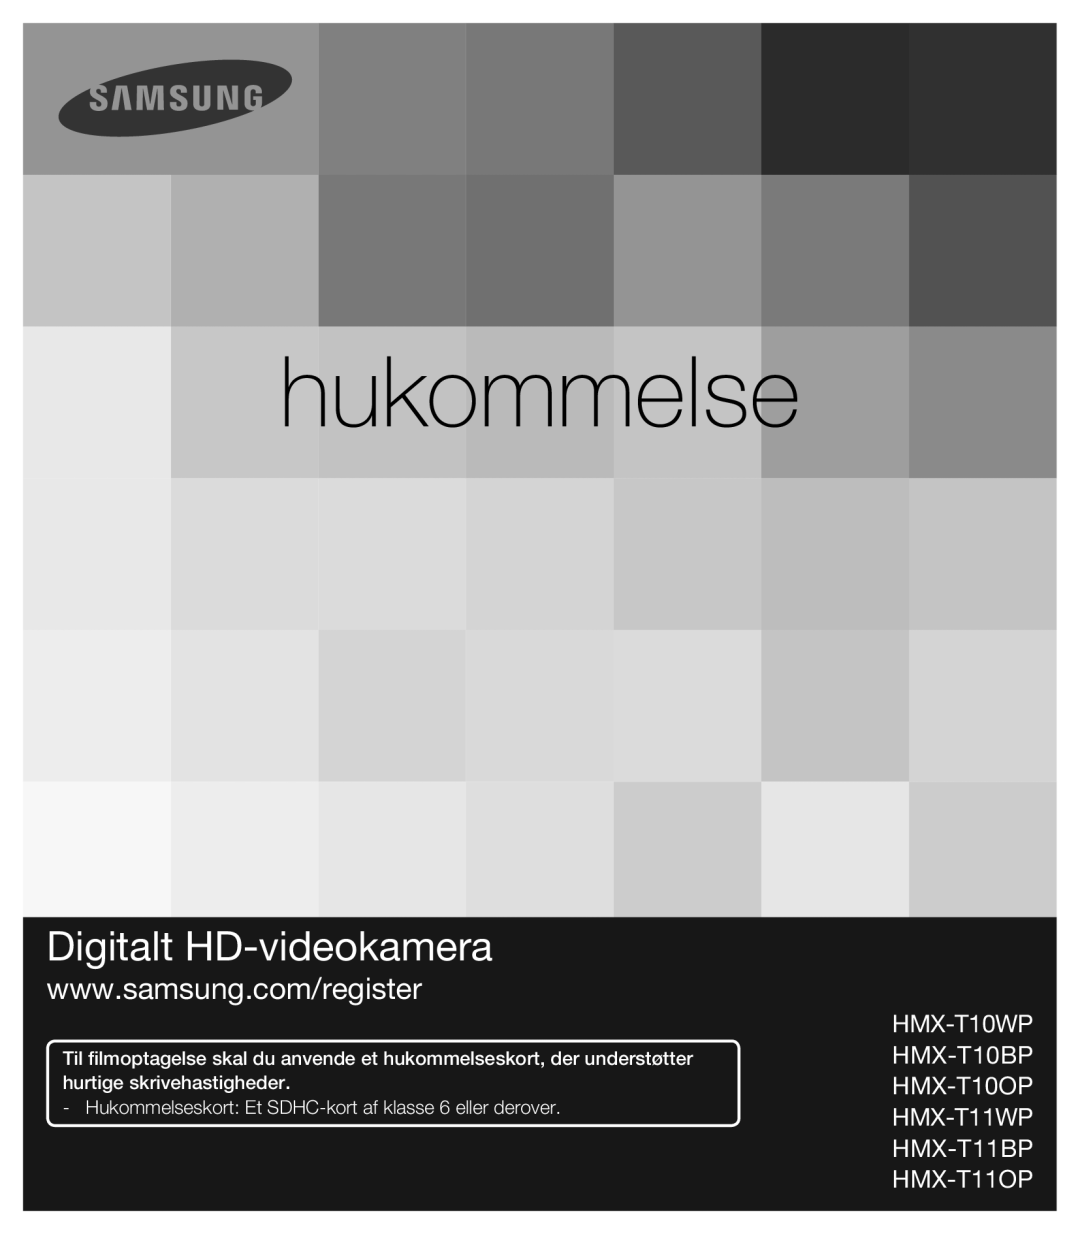 Samsung HMX-T10BP/EDC manual hukommelse, Digitalt HD-videokamera, Hukommelseskort Et SDHC-kort af klasse 6 eller derover 